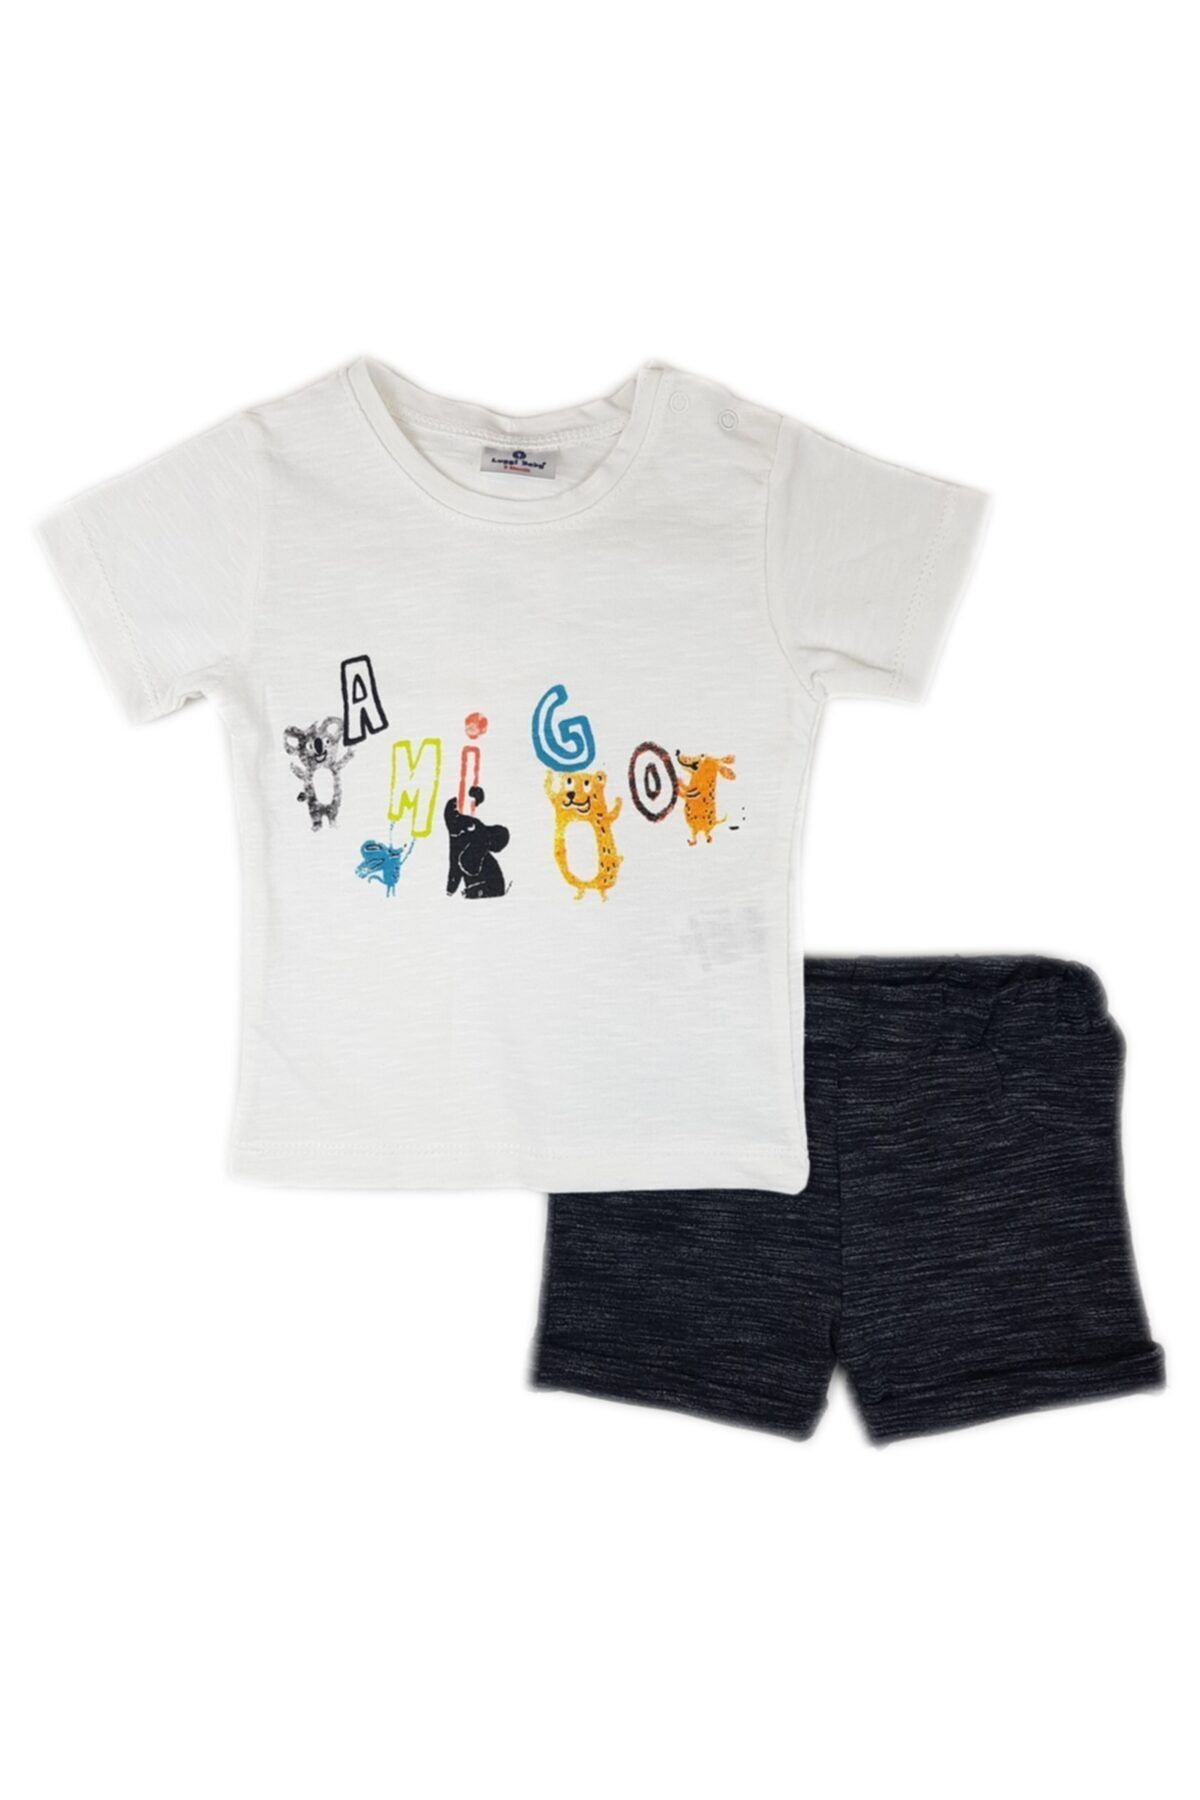 Luggi Baby Erkek 'amigo' Beyaz T-shirt & Lacivert Şort Takım Lgb-5120-1